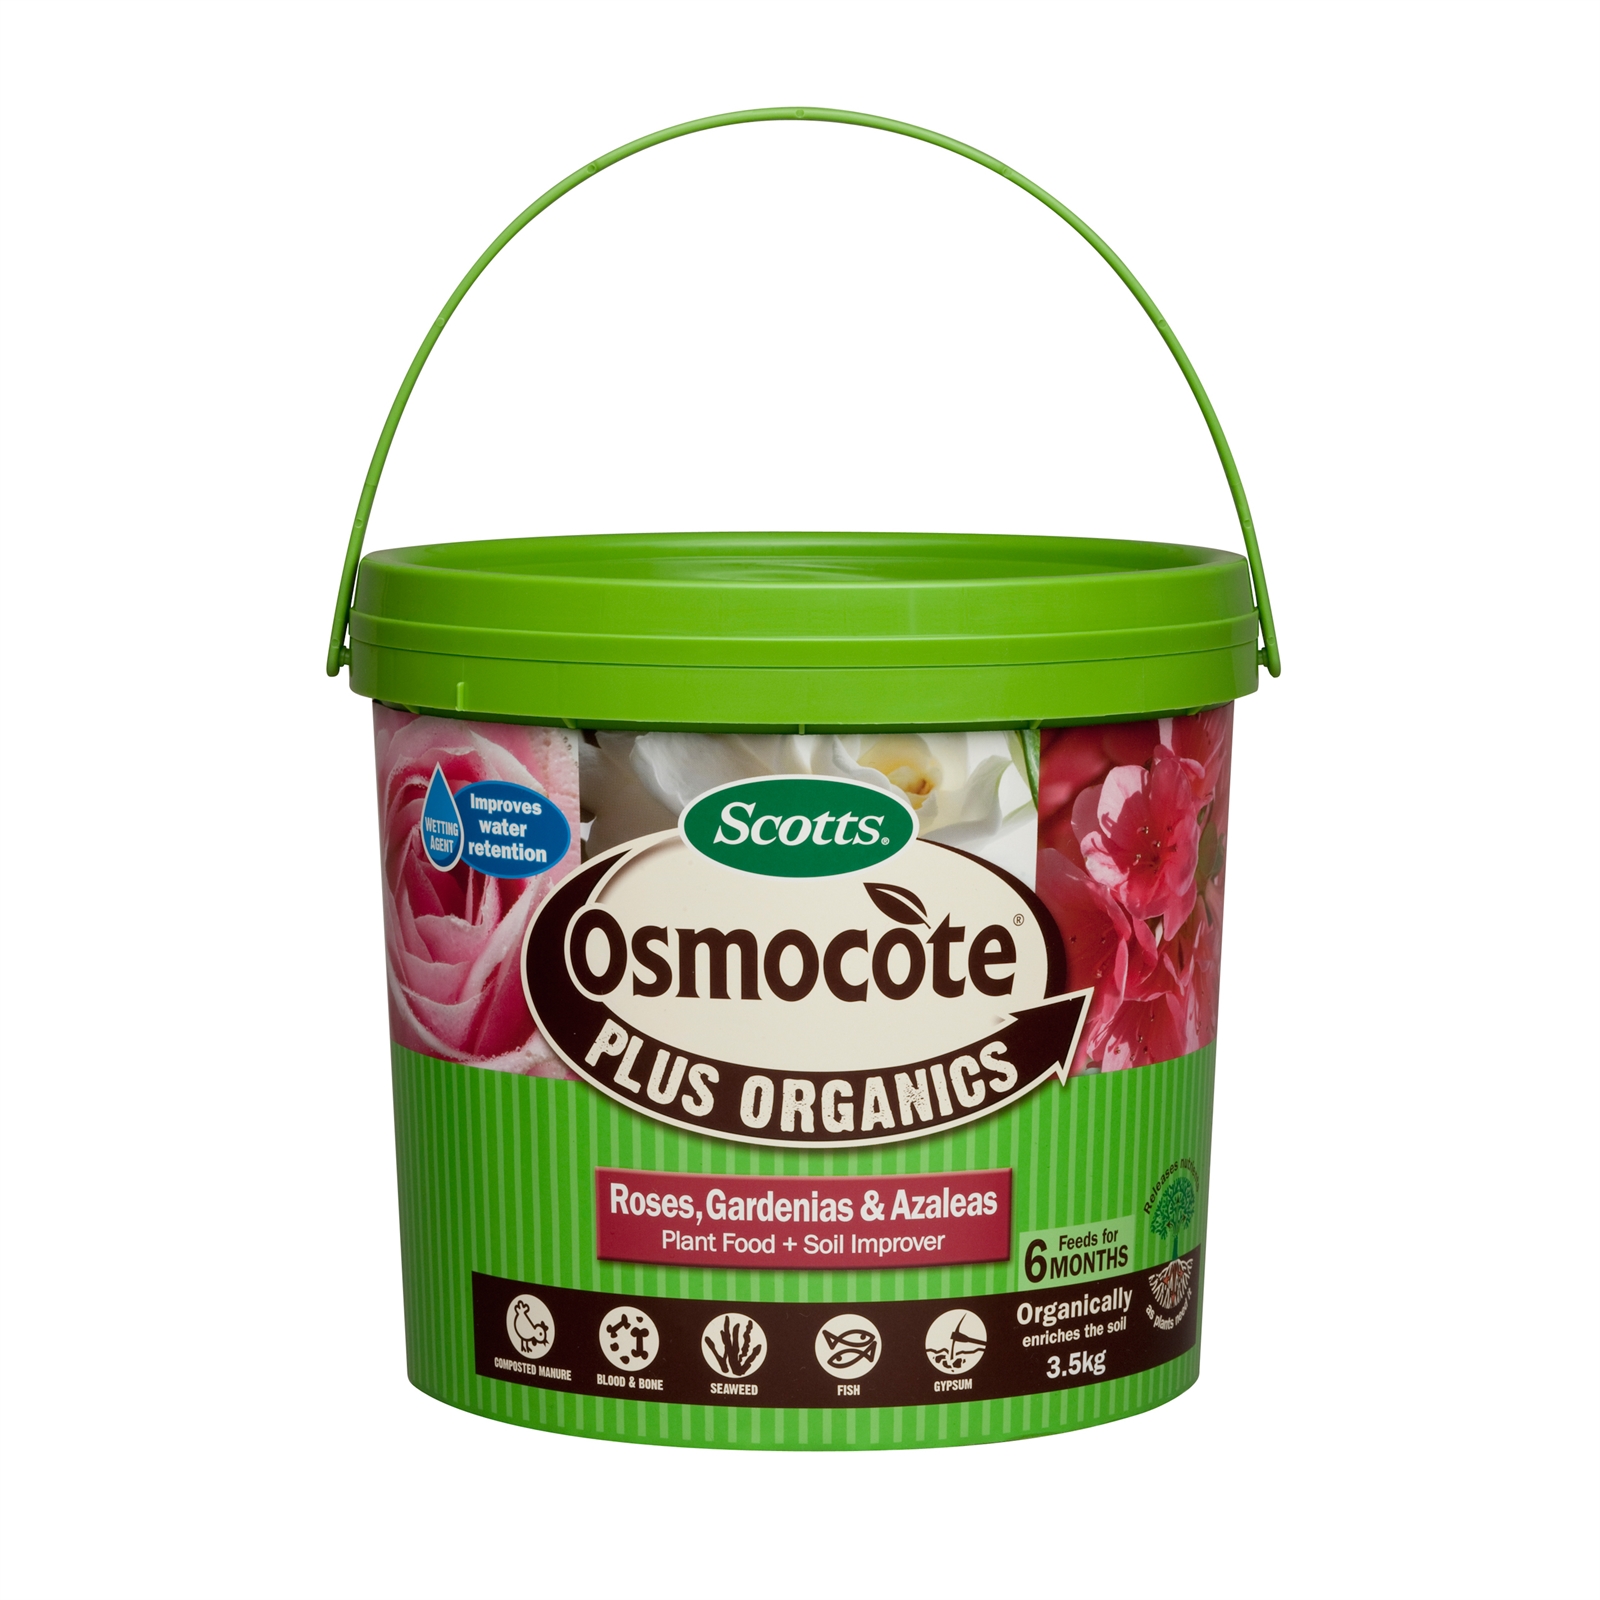 Osmocote Plus Organics 3.5kg Rose Gardenia And Azalea Fertiliser